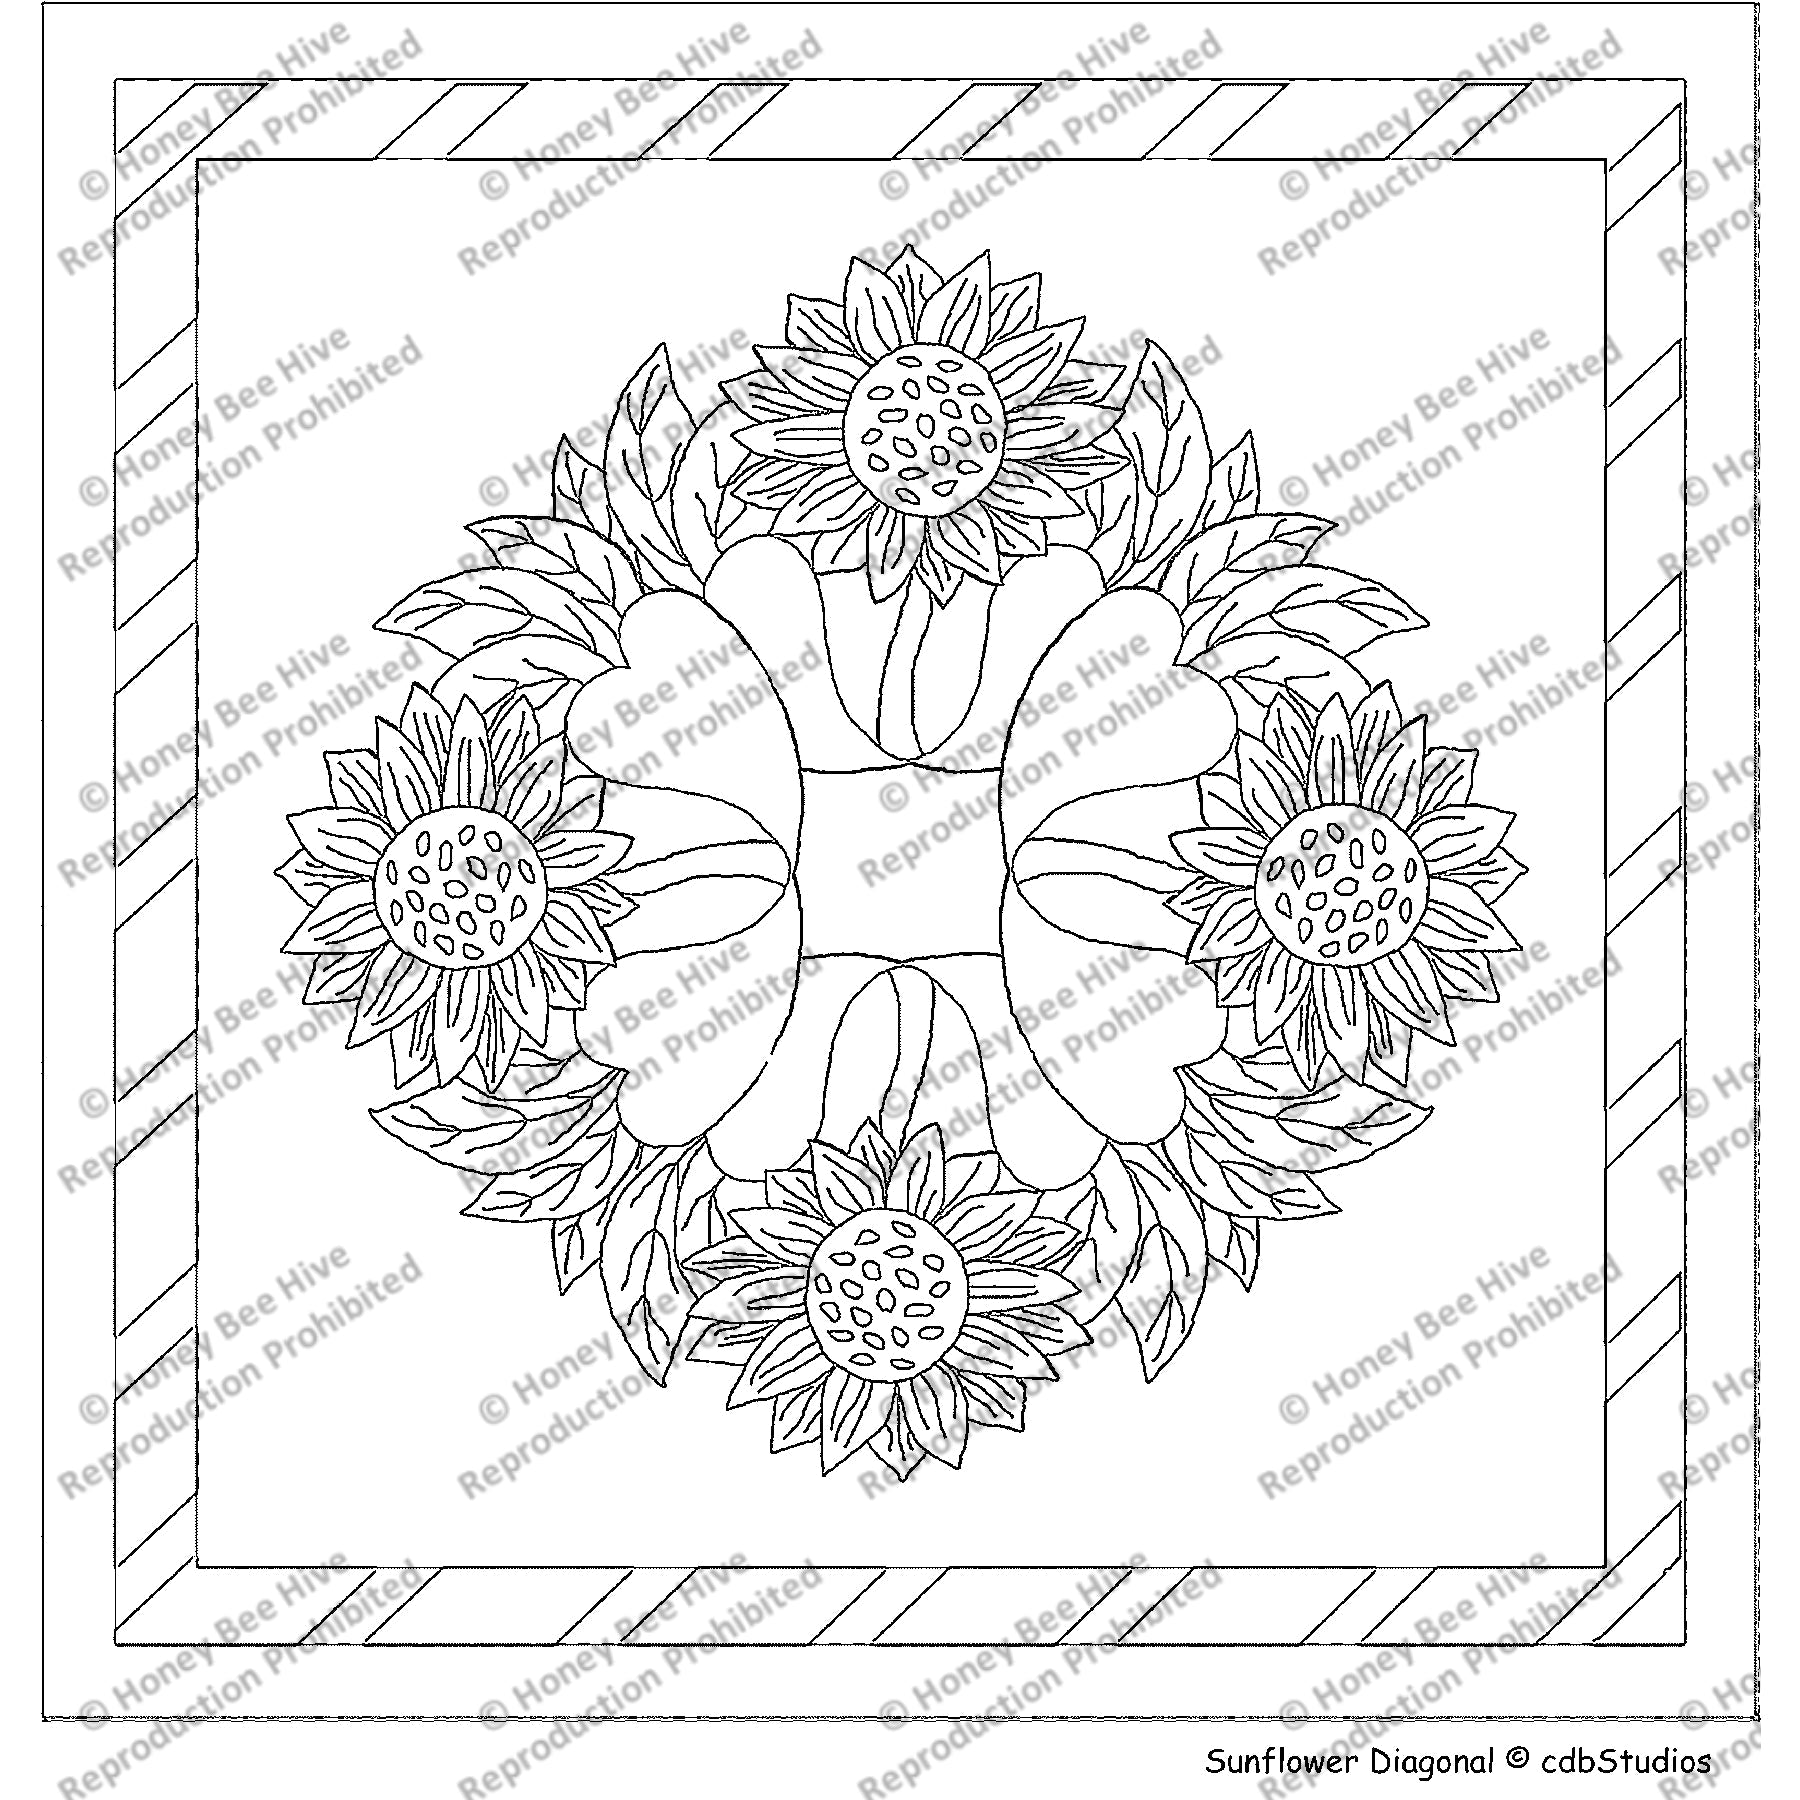 Sunflower Diagonal Grid, rug hooking pattern